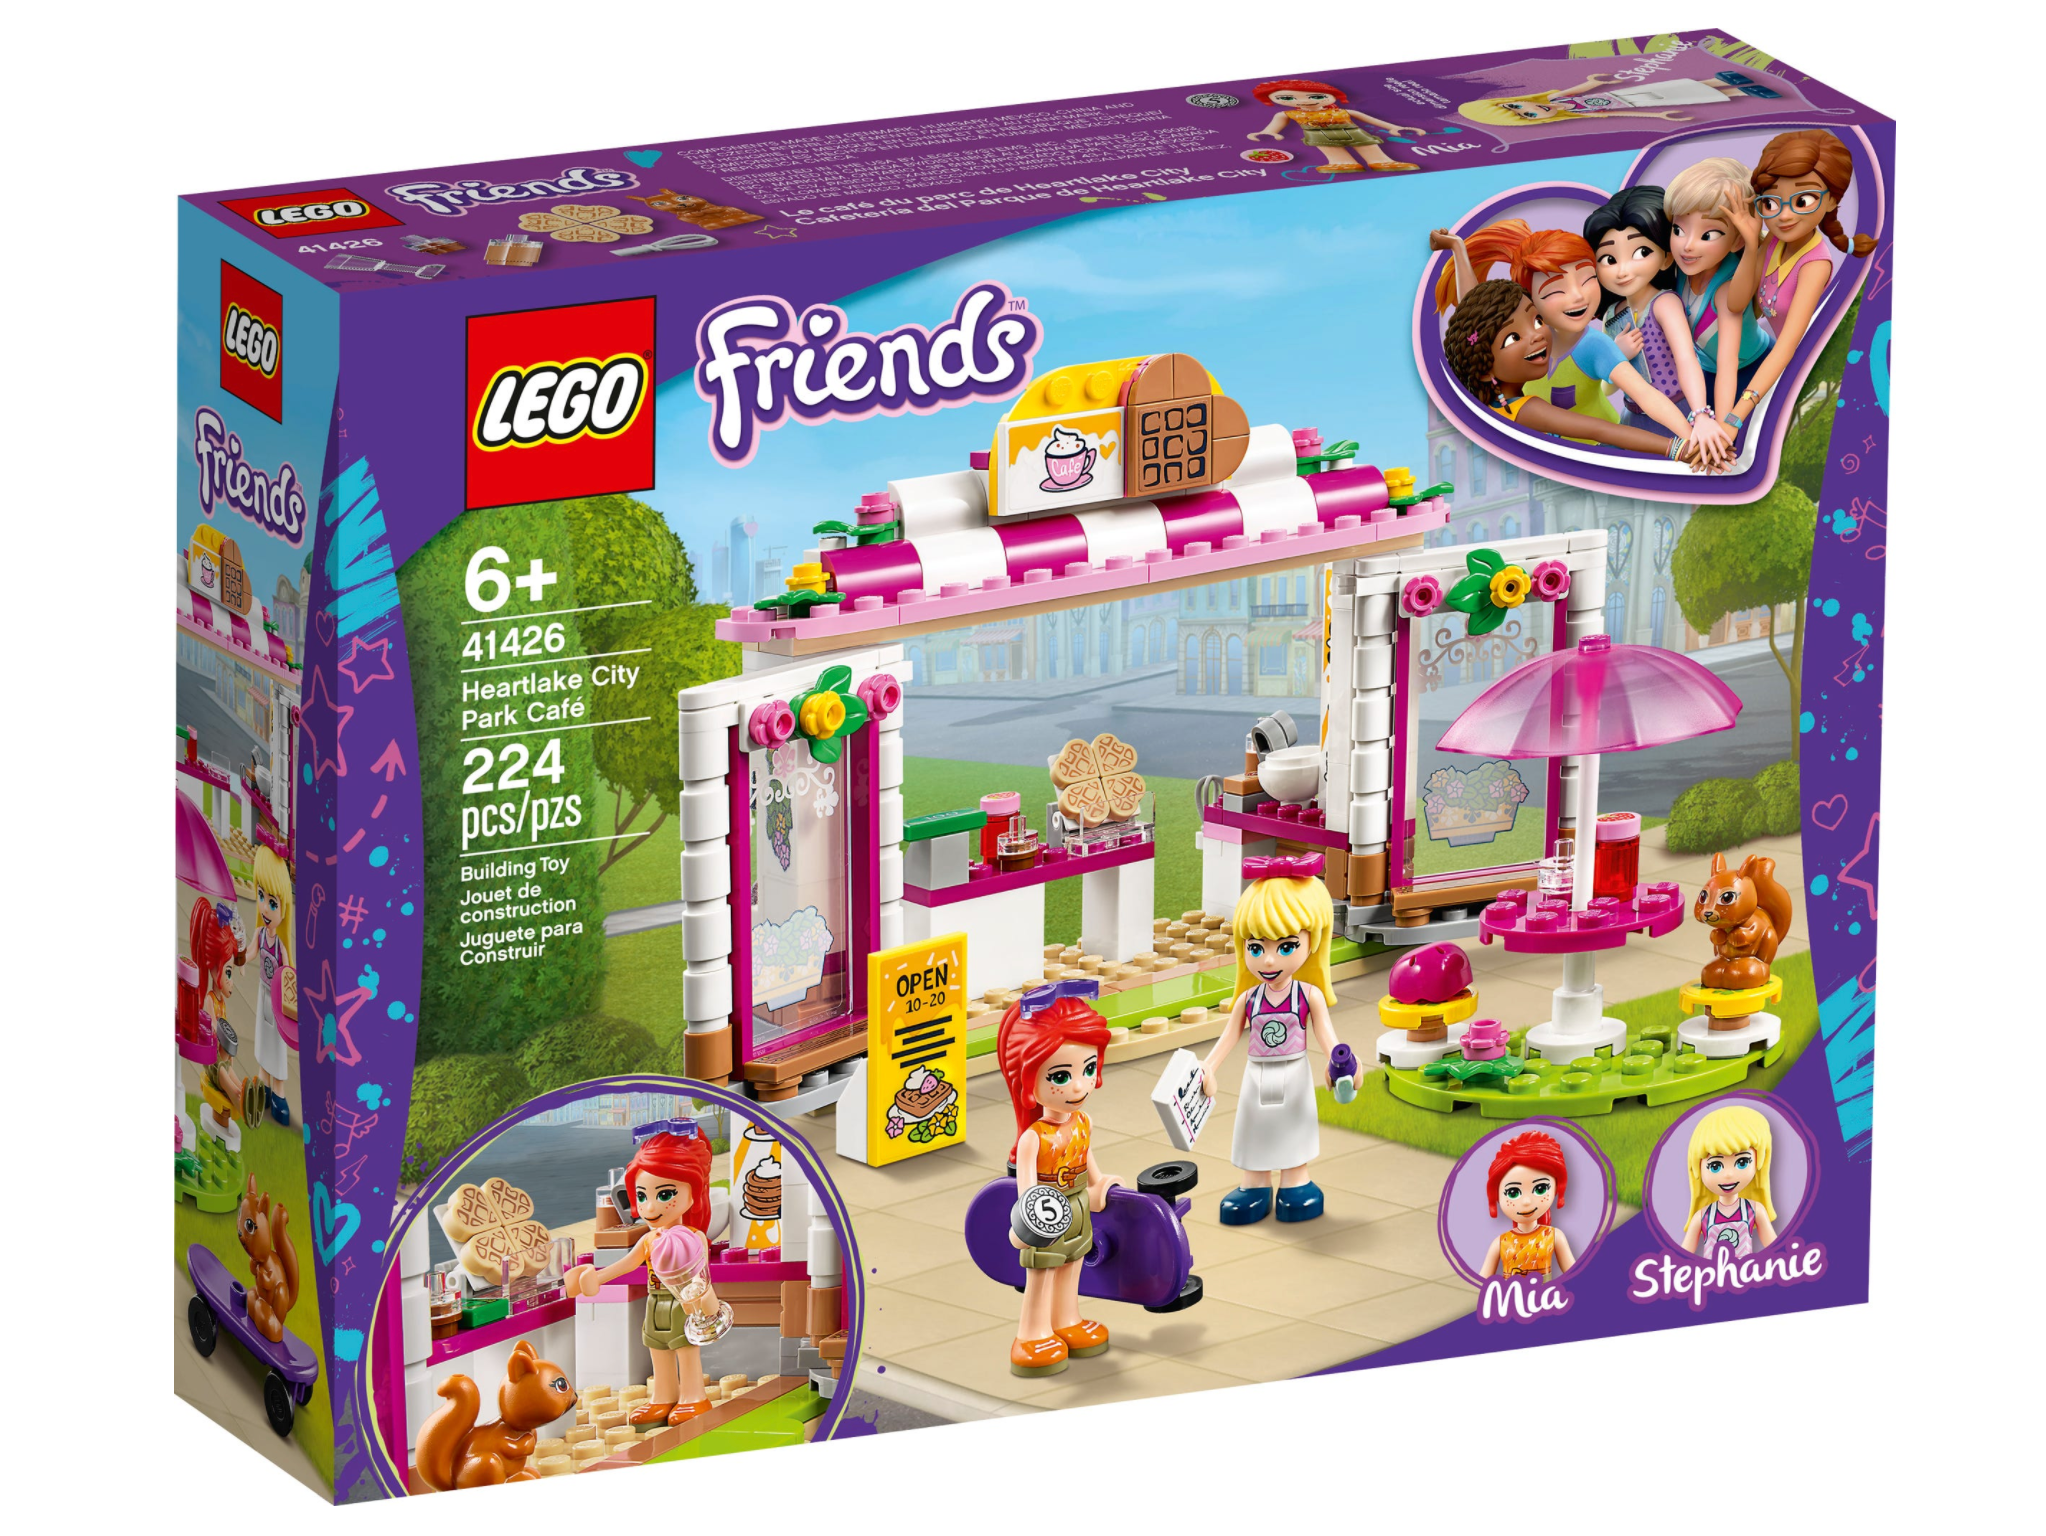 LEGO: Friends - Heartlake City Park Café